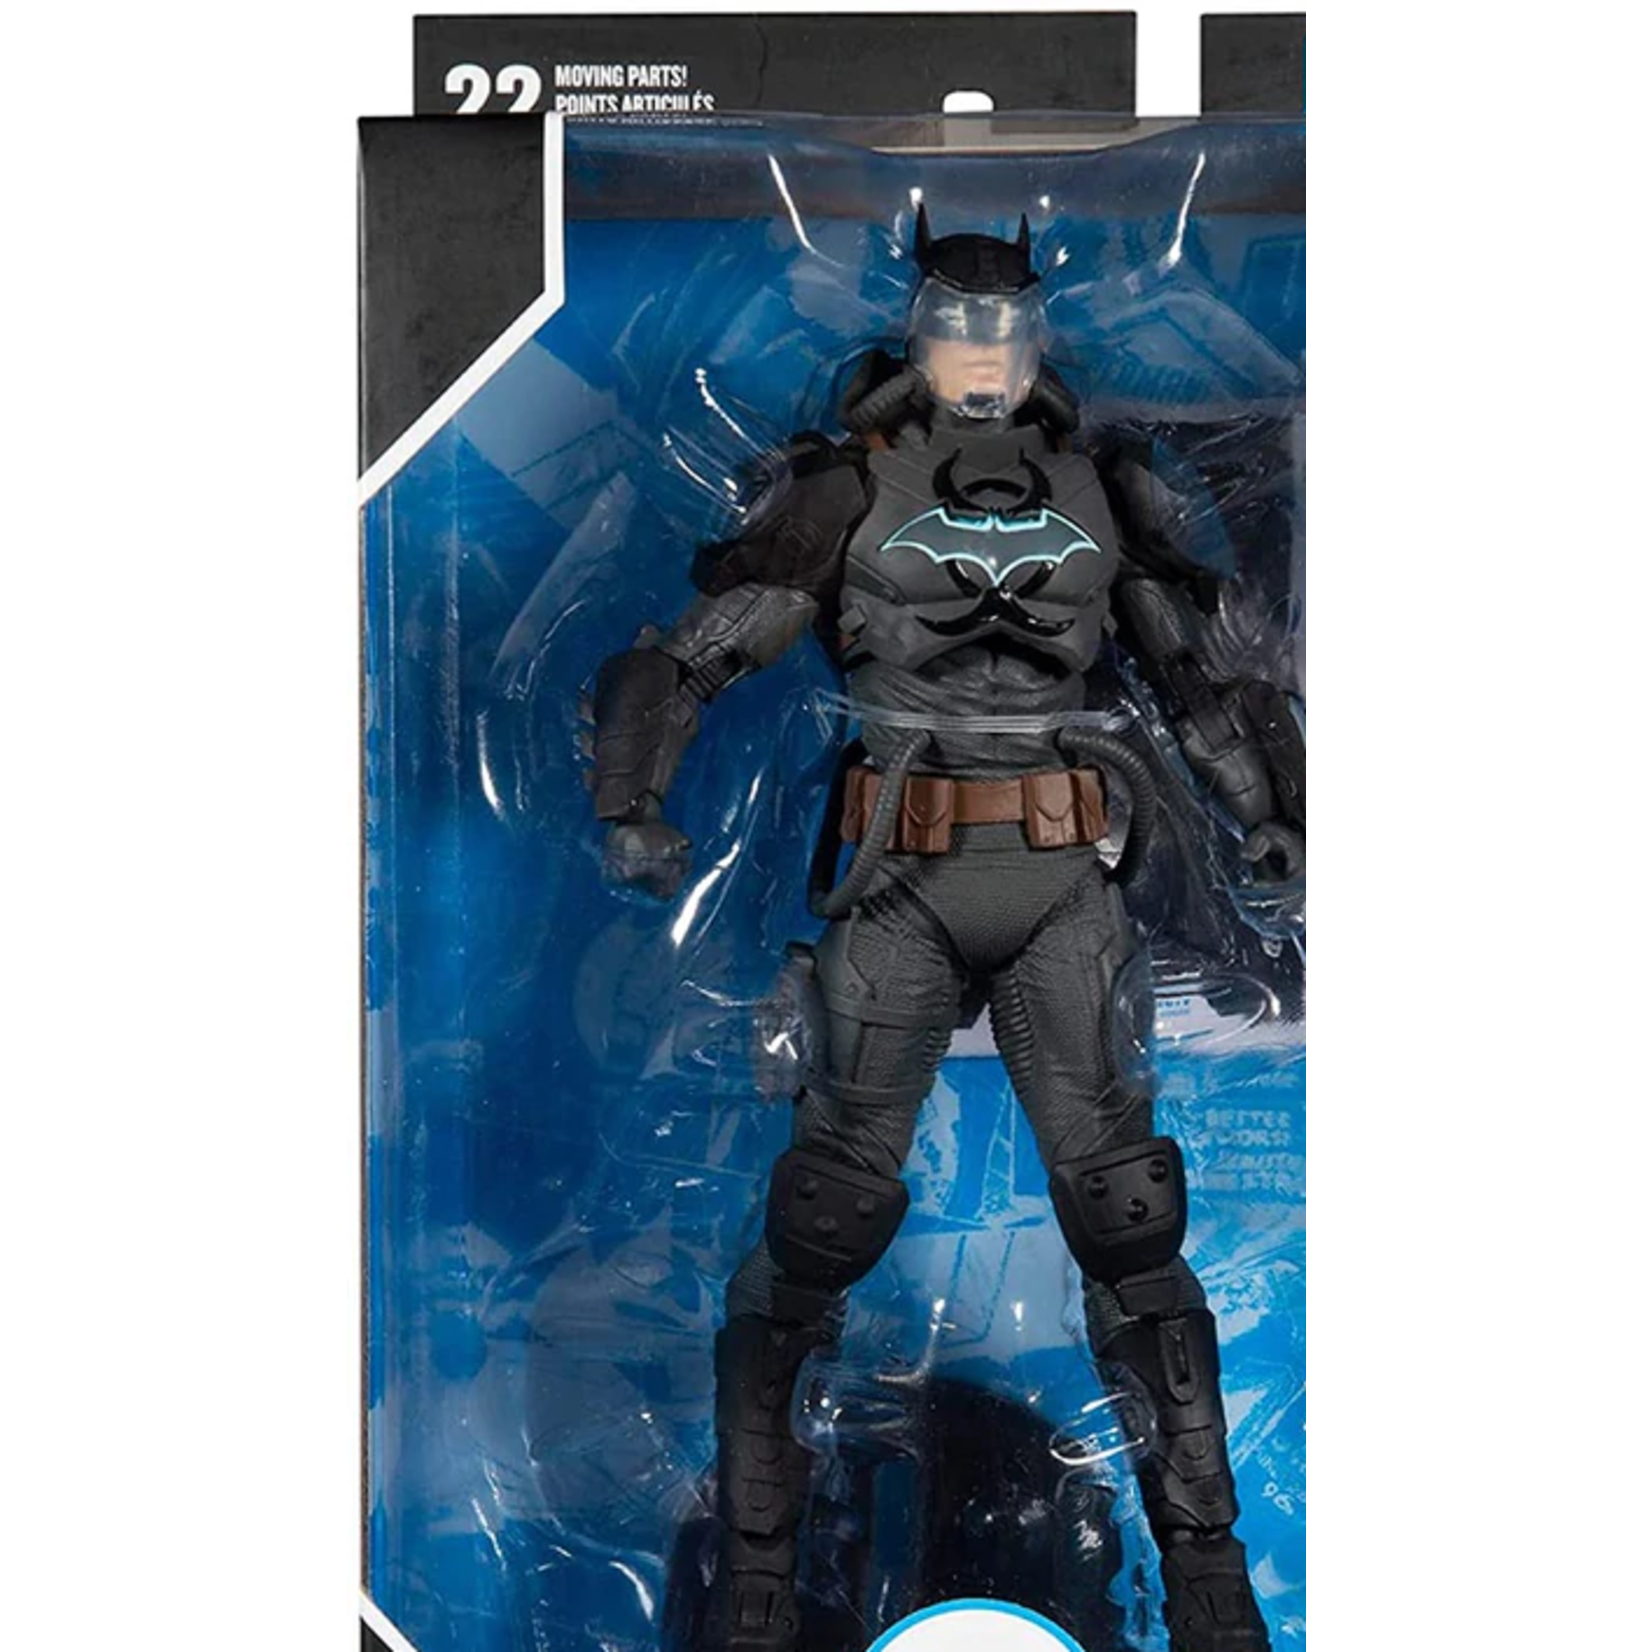 McFarlane Toys DC Multiverse Comic Series 7 Inch Action Figure - Batman Hazmat Suit